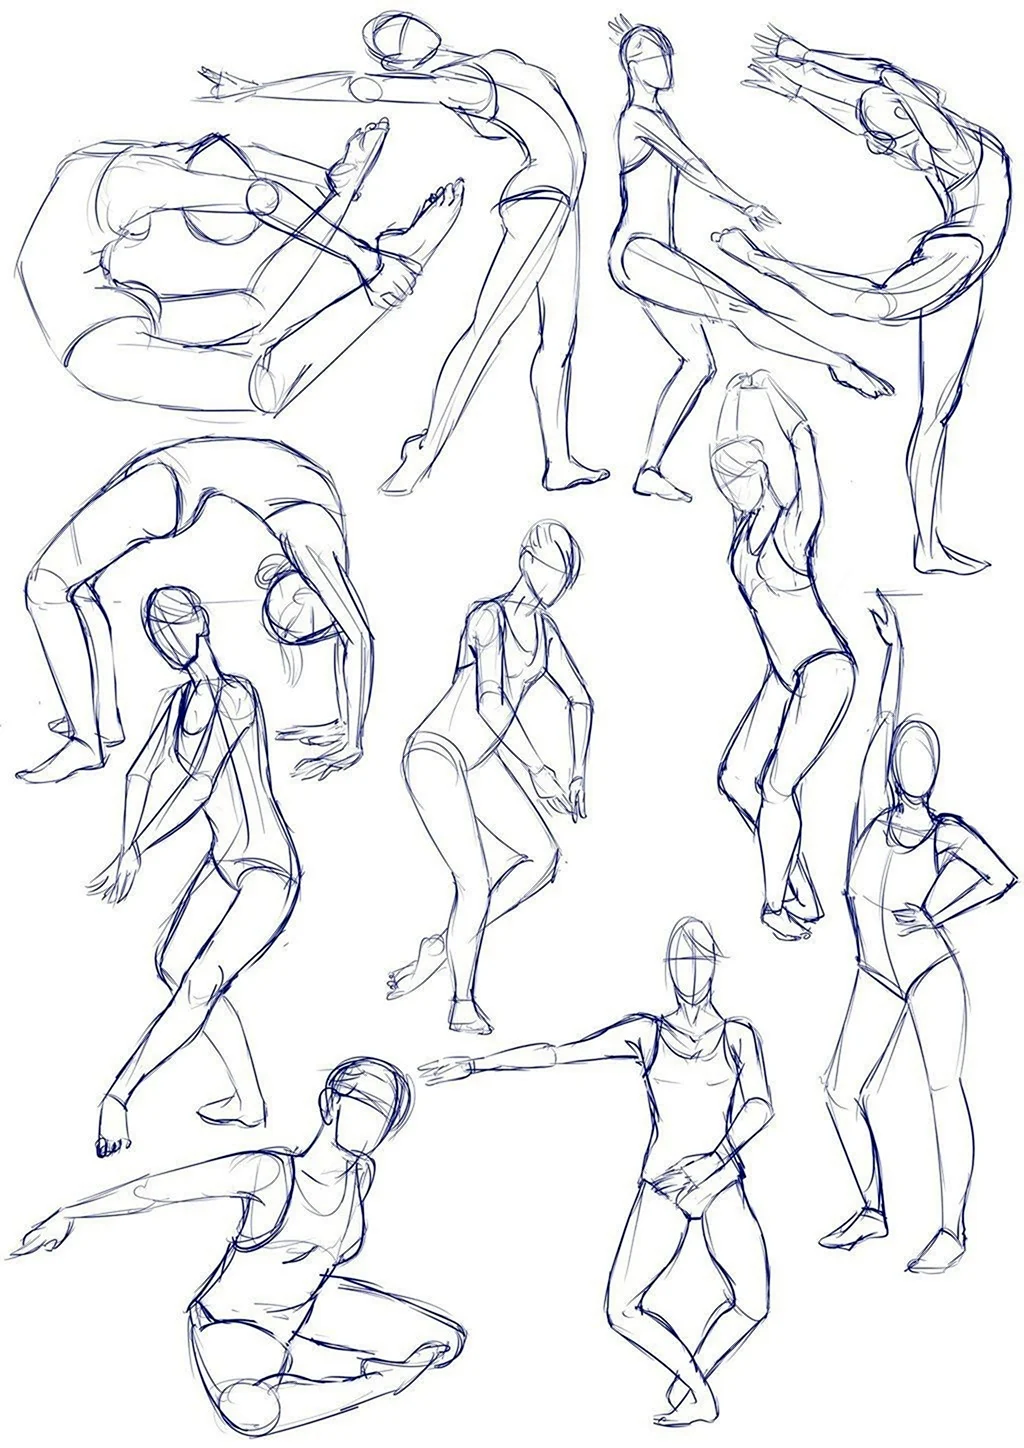 Изобразить человека в движении. Рисование человека в движении. Скетчи людей. Позы для рисования. Человеческая фигура в движении.